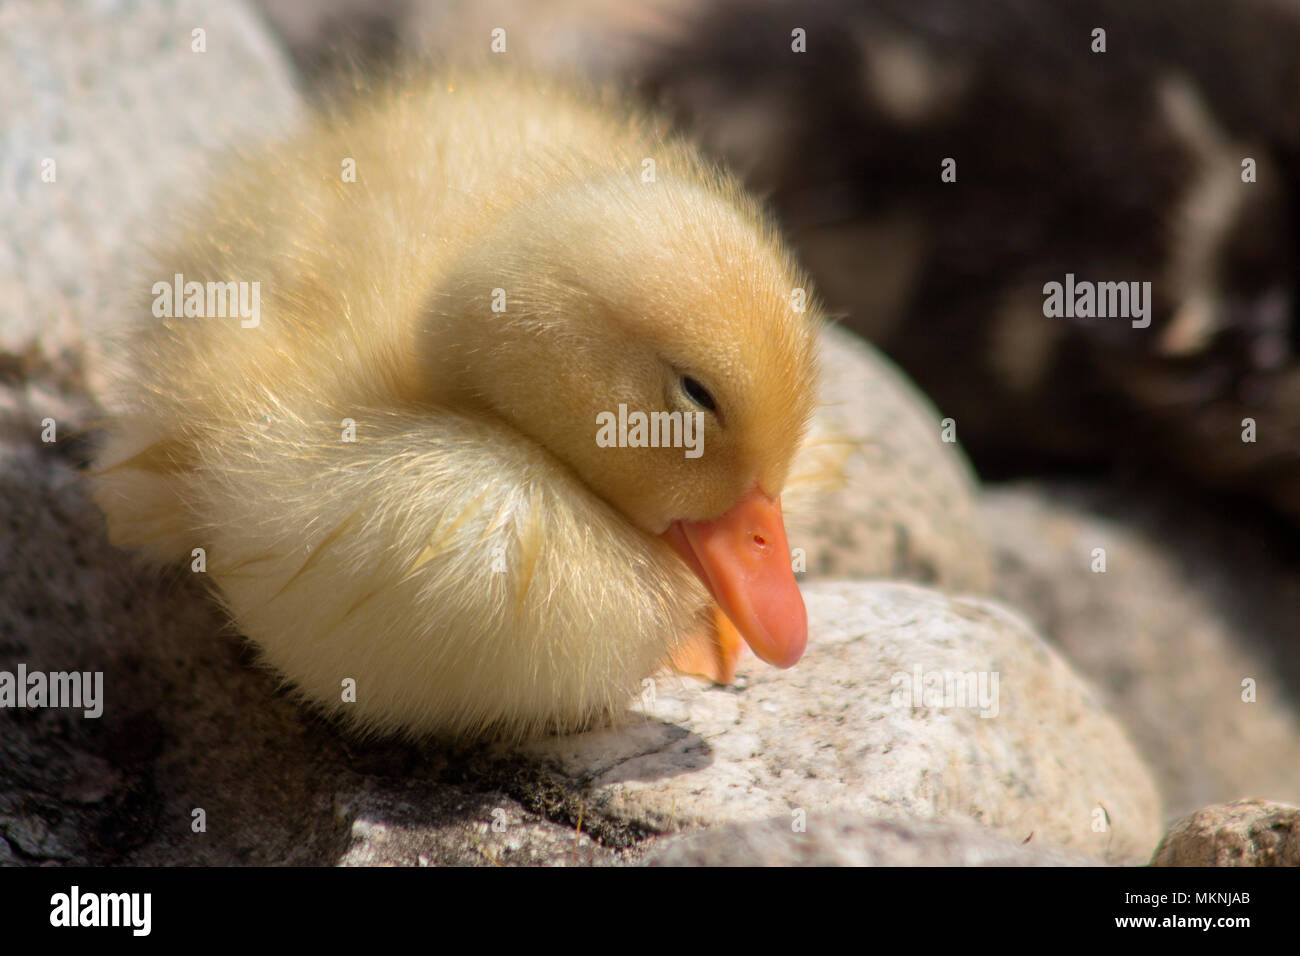 Sleeping newborn duckling - a fluffy little ball. Stock Photo